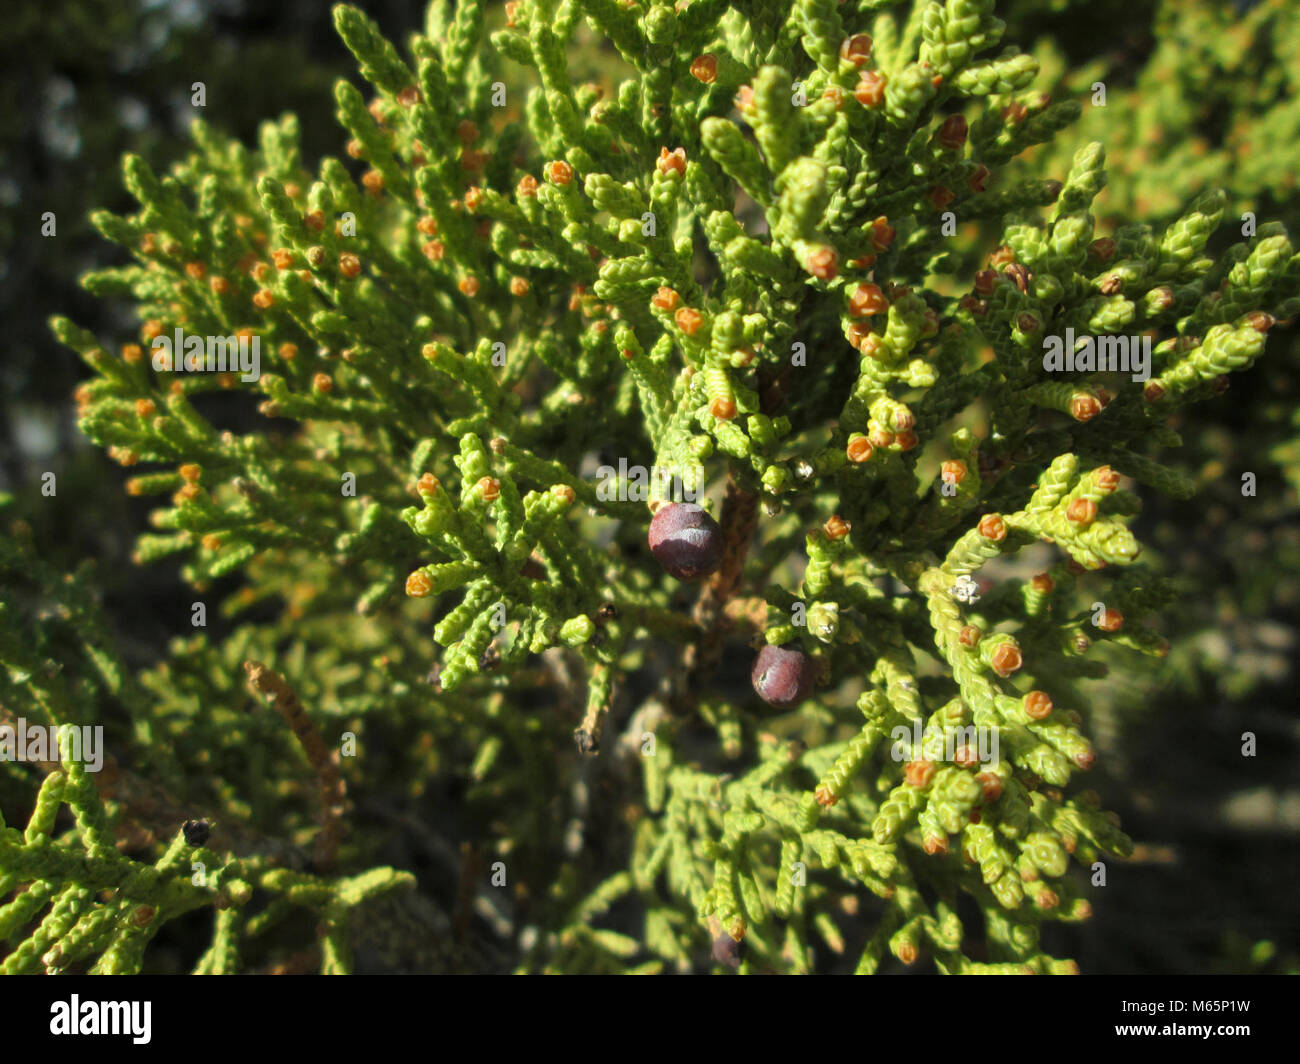 Juniper (Juniperus sp). Stock Photo